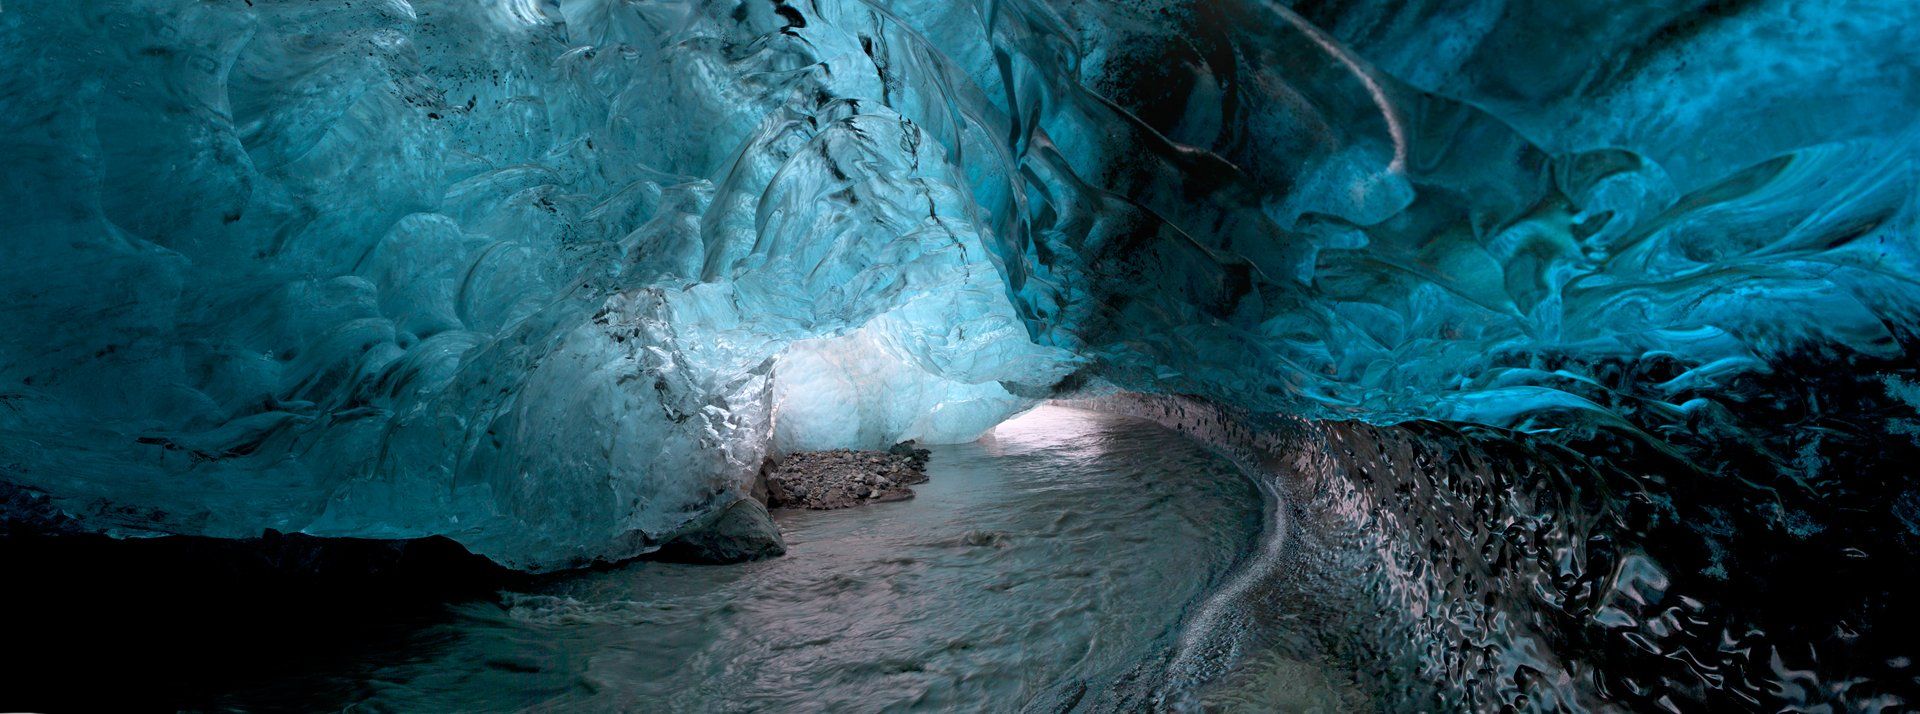 исландия,ледник,лёд,река,вода,пещера,ice,iceland,river,, Олег Грачёв